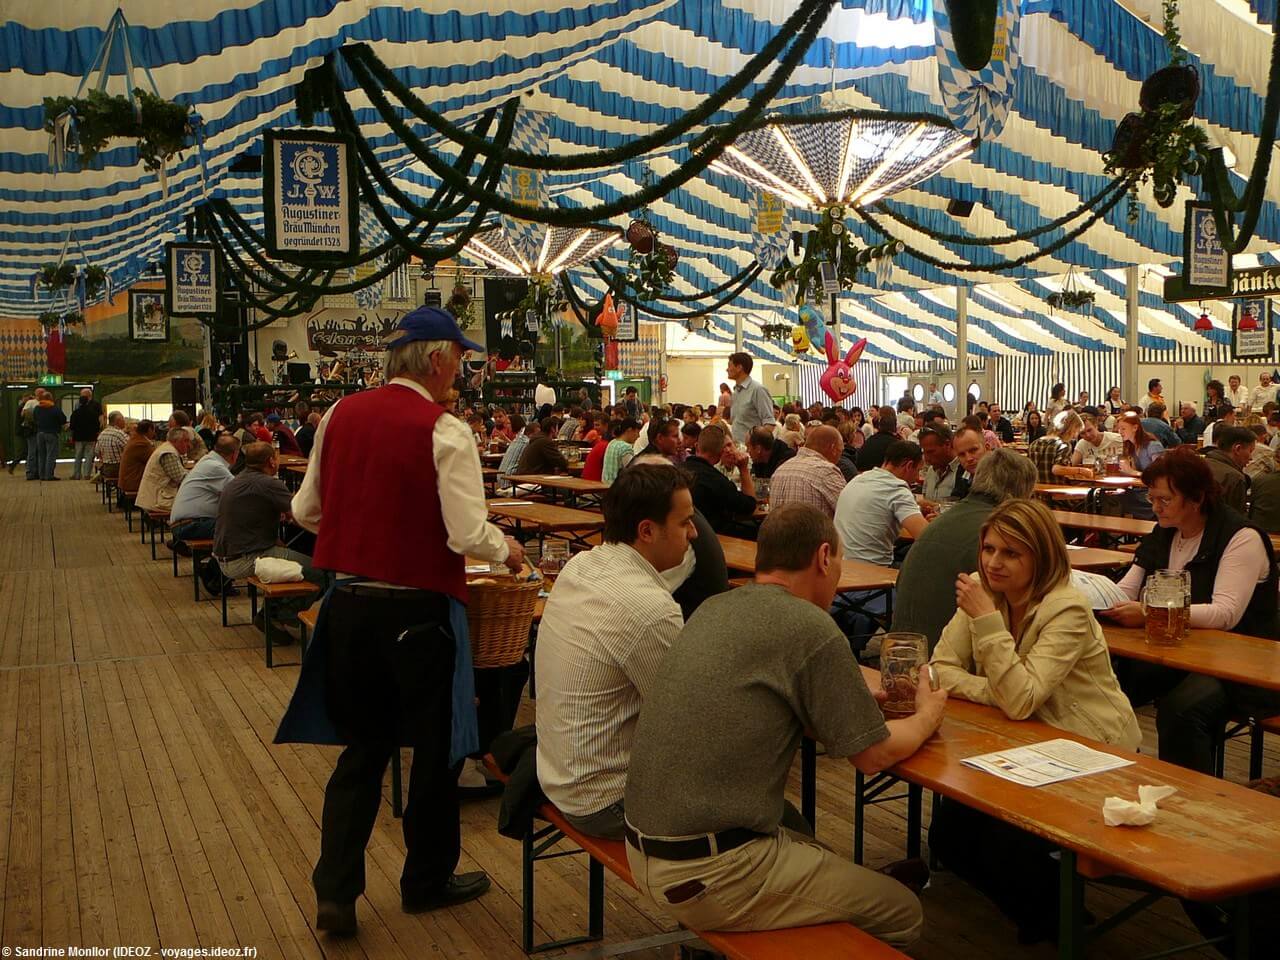 Fruhlingsfest de Munich Tente Bayernland vendeur de bretzels